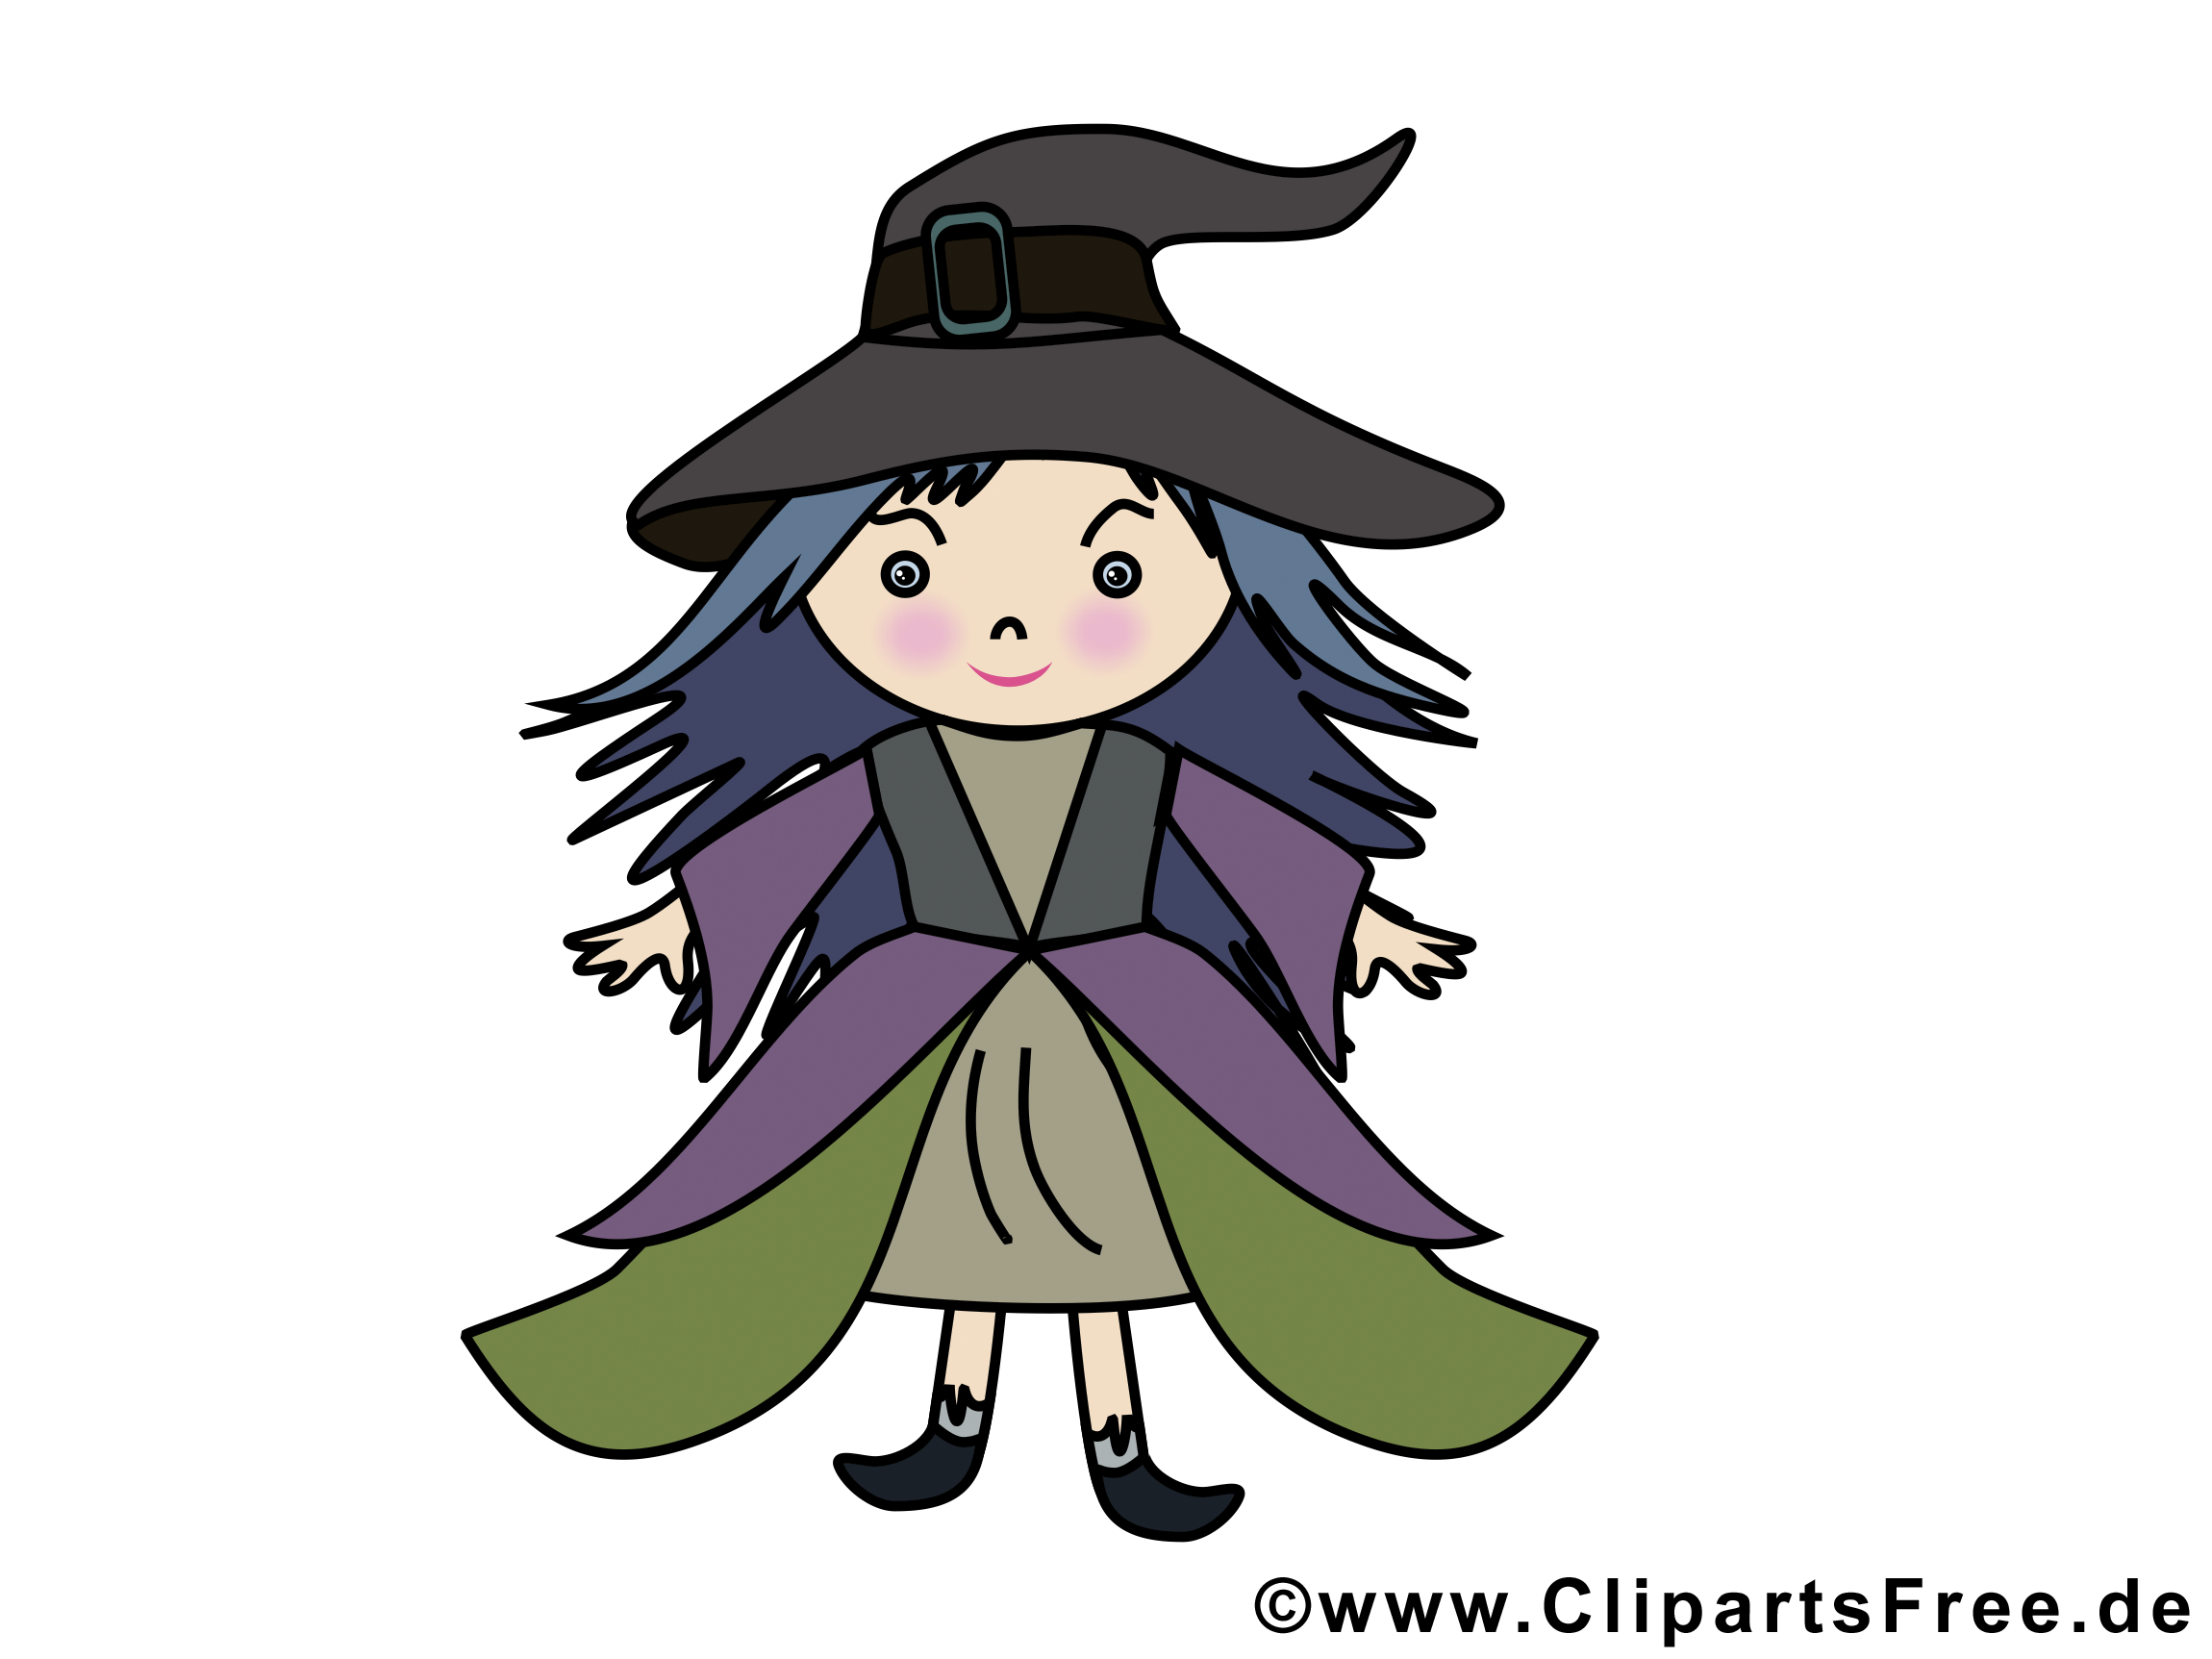 Dessin gratuit sorcière - Halloween image